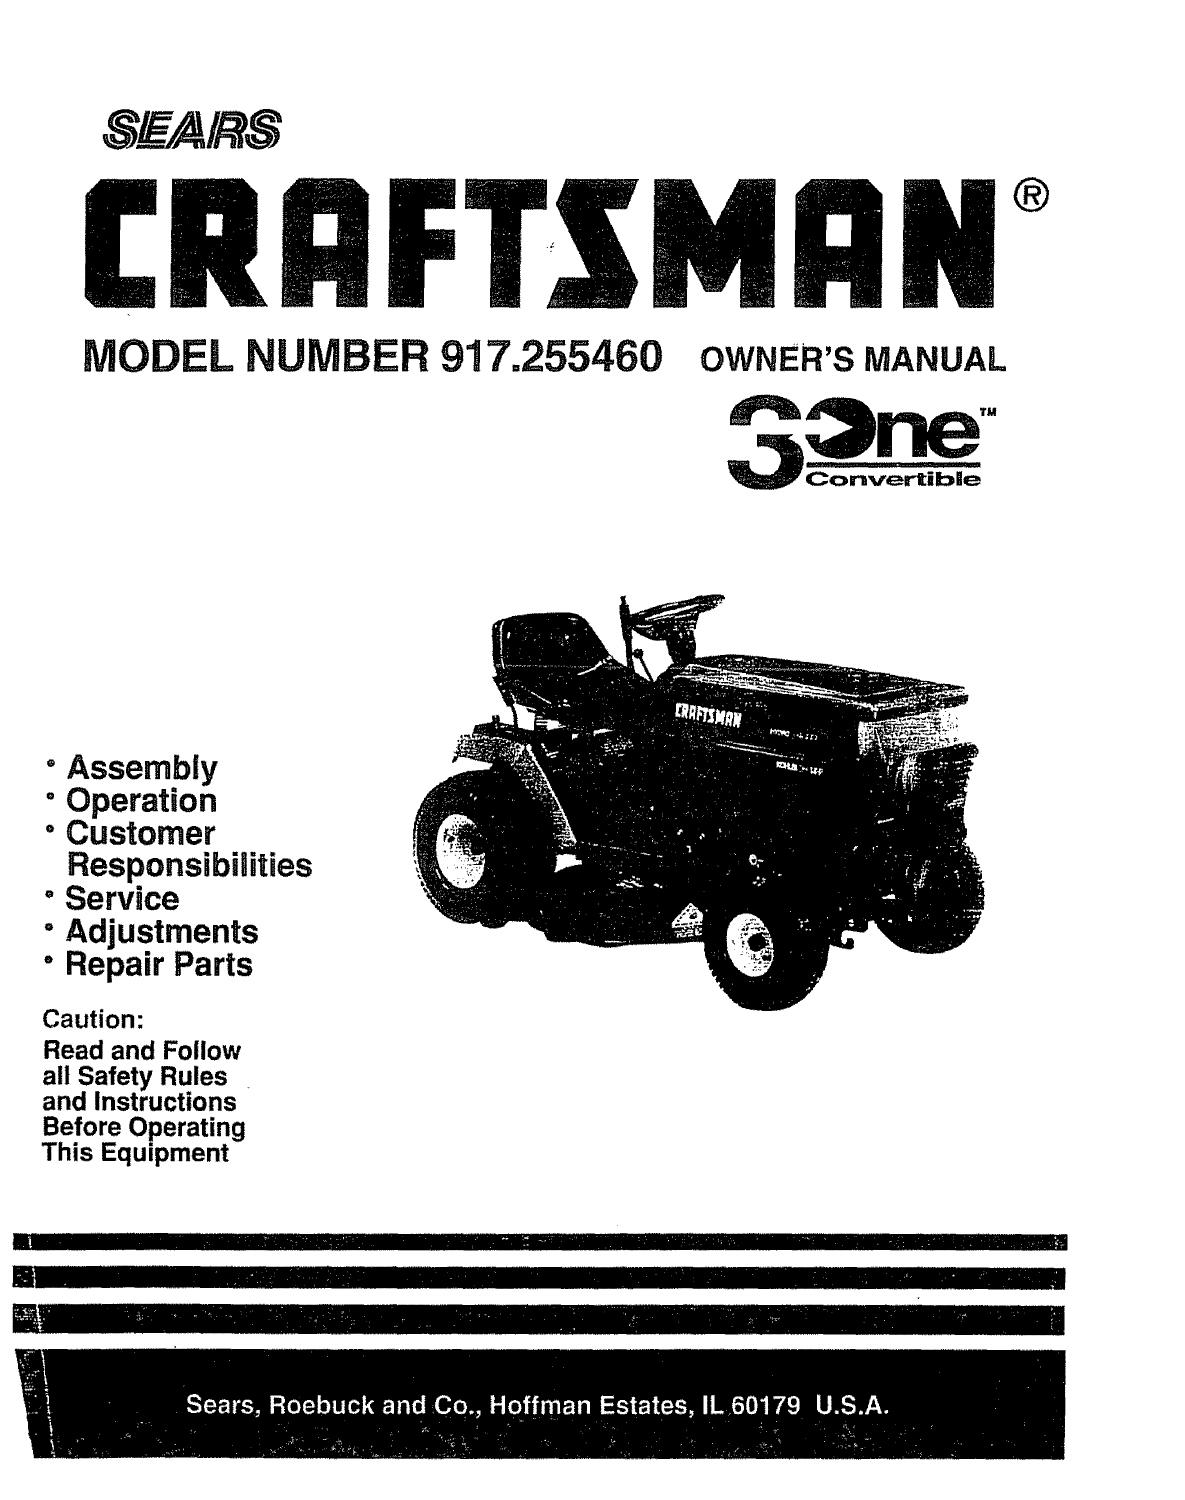 sears craftsman lawn mower repair manual